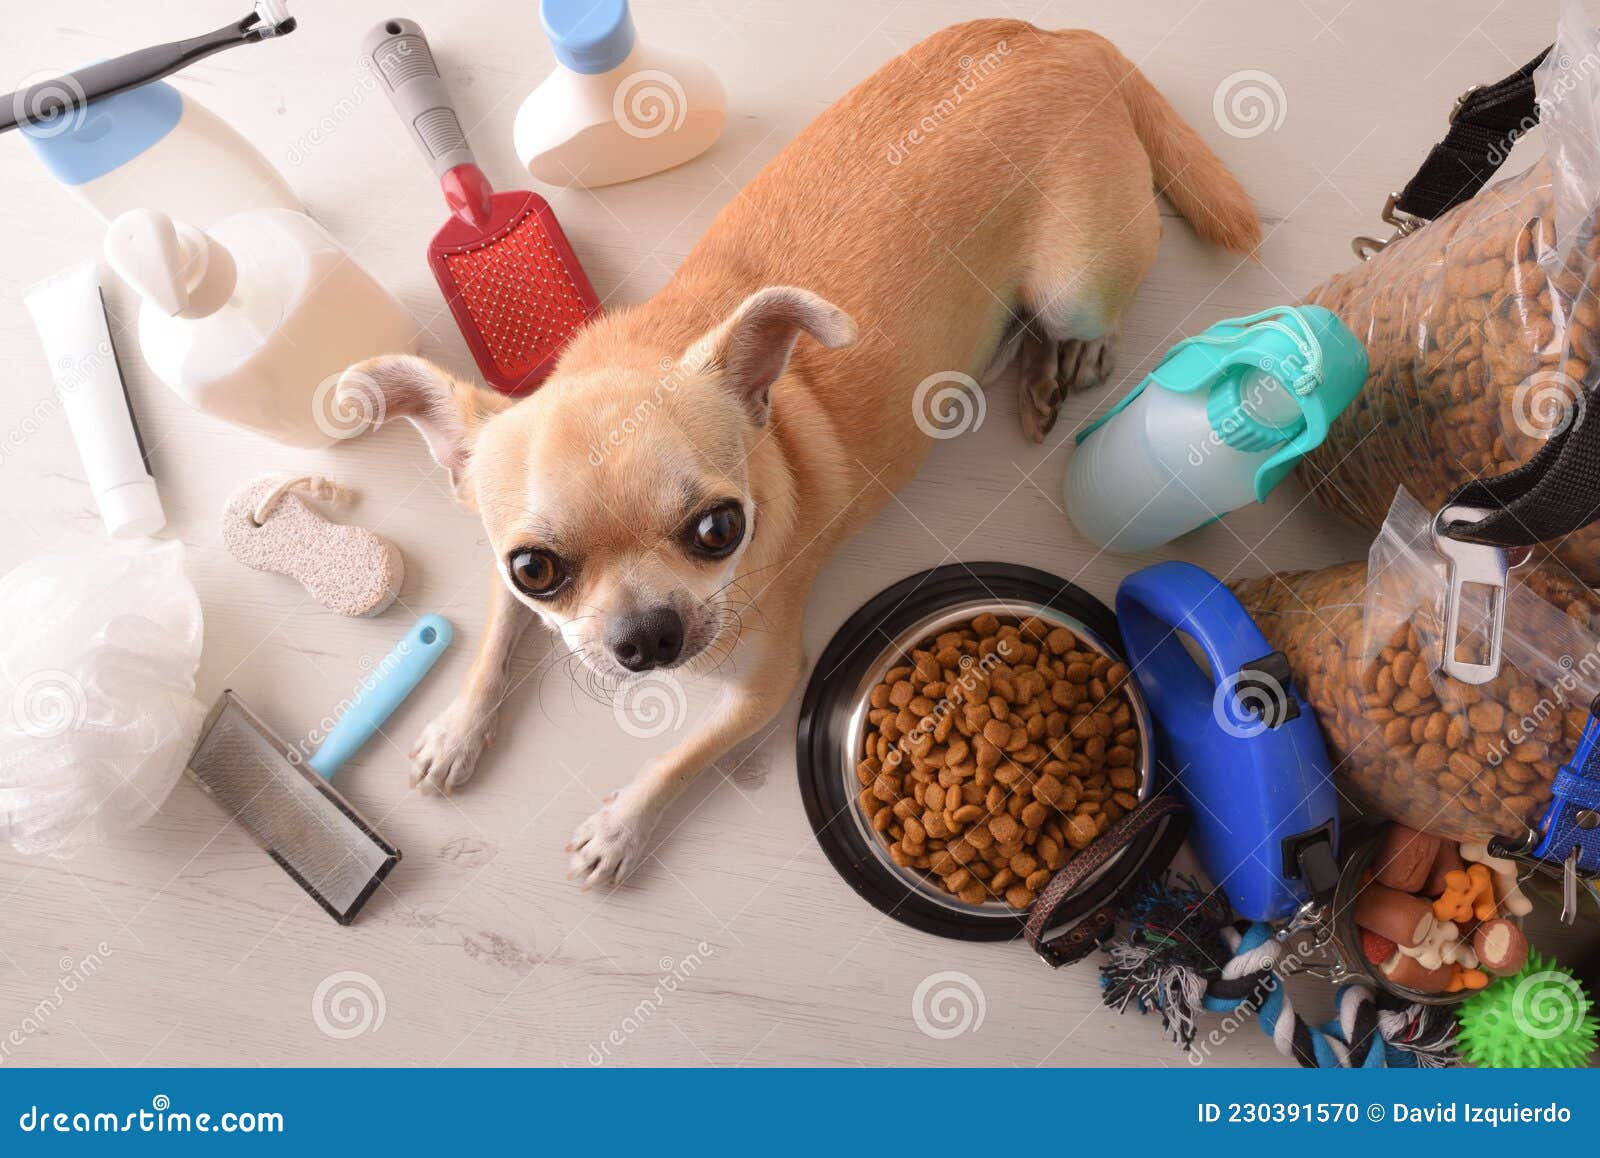 Alimentos Y Accesorios Para Perros Y Chihuahuas En Mesa Elevada Foto de archivo - Imagen de hospitalidad, 230391570